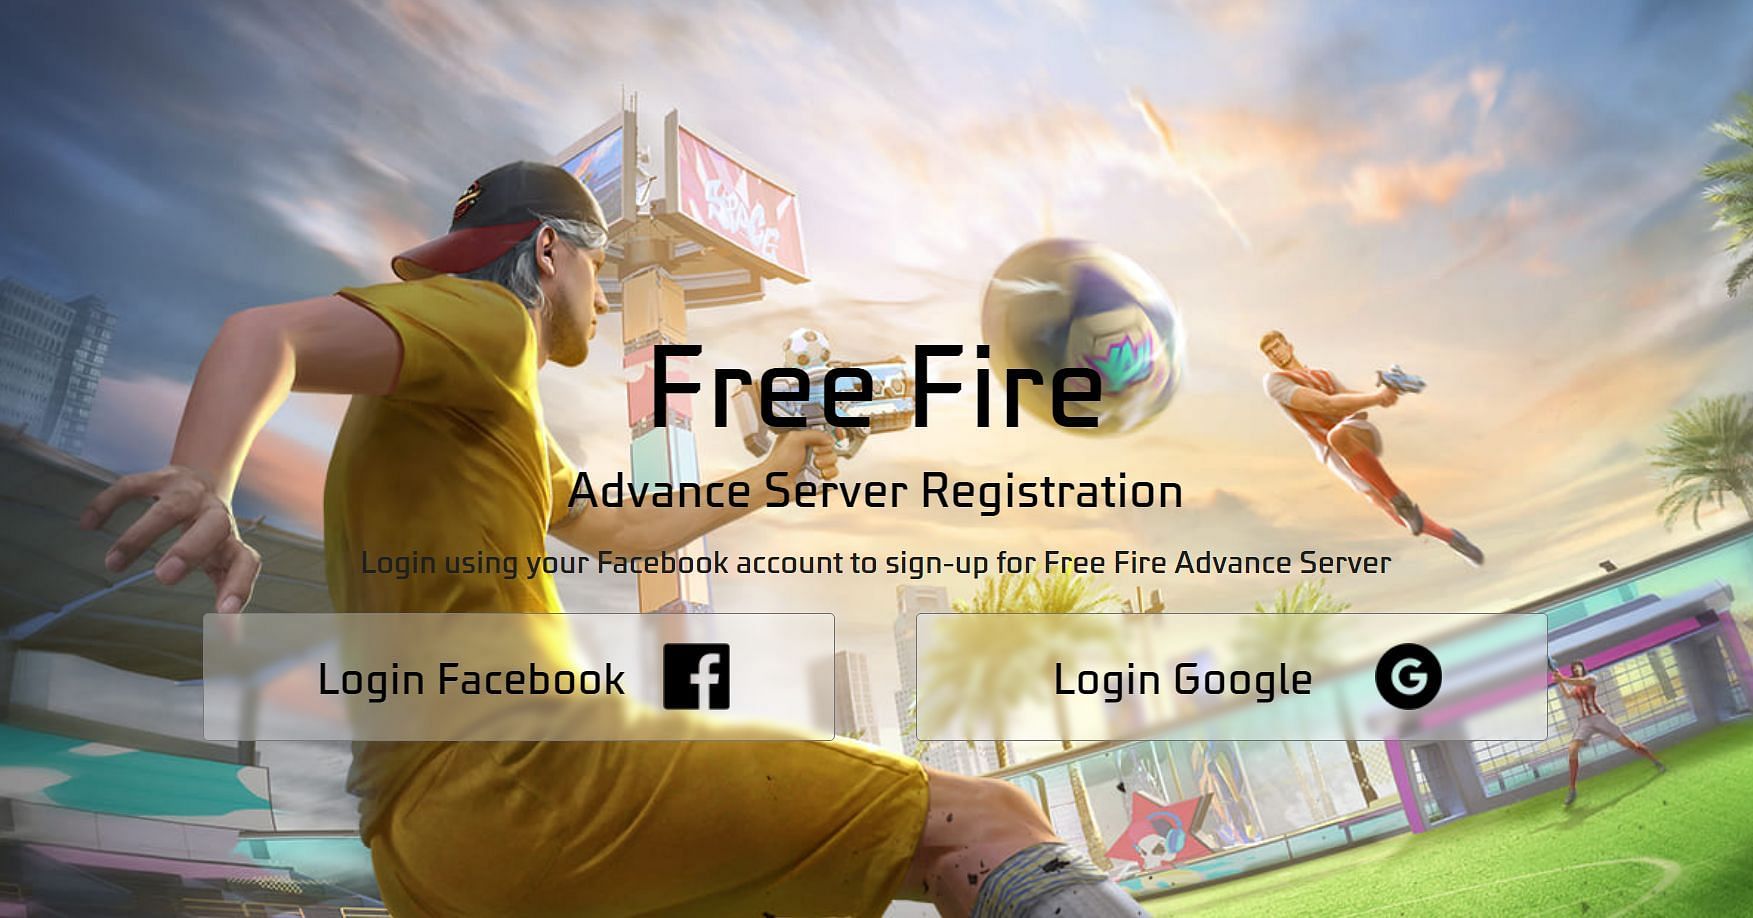 Para se registrar, use seu ID do Google ou Facebook para fazer login no site oficial do programa Advance Server (Imagem via Garen)